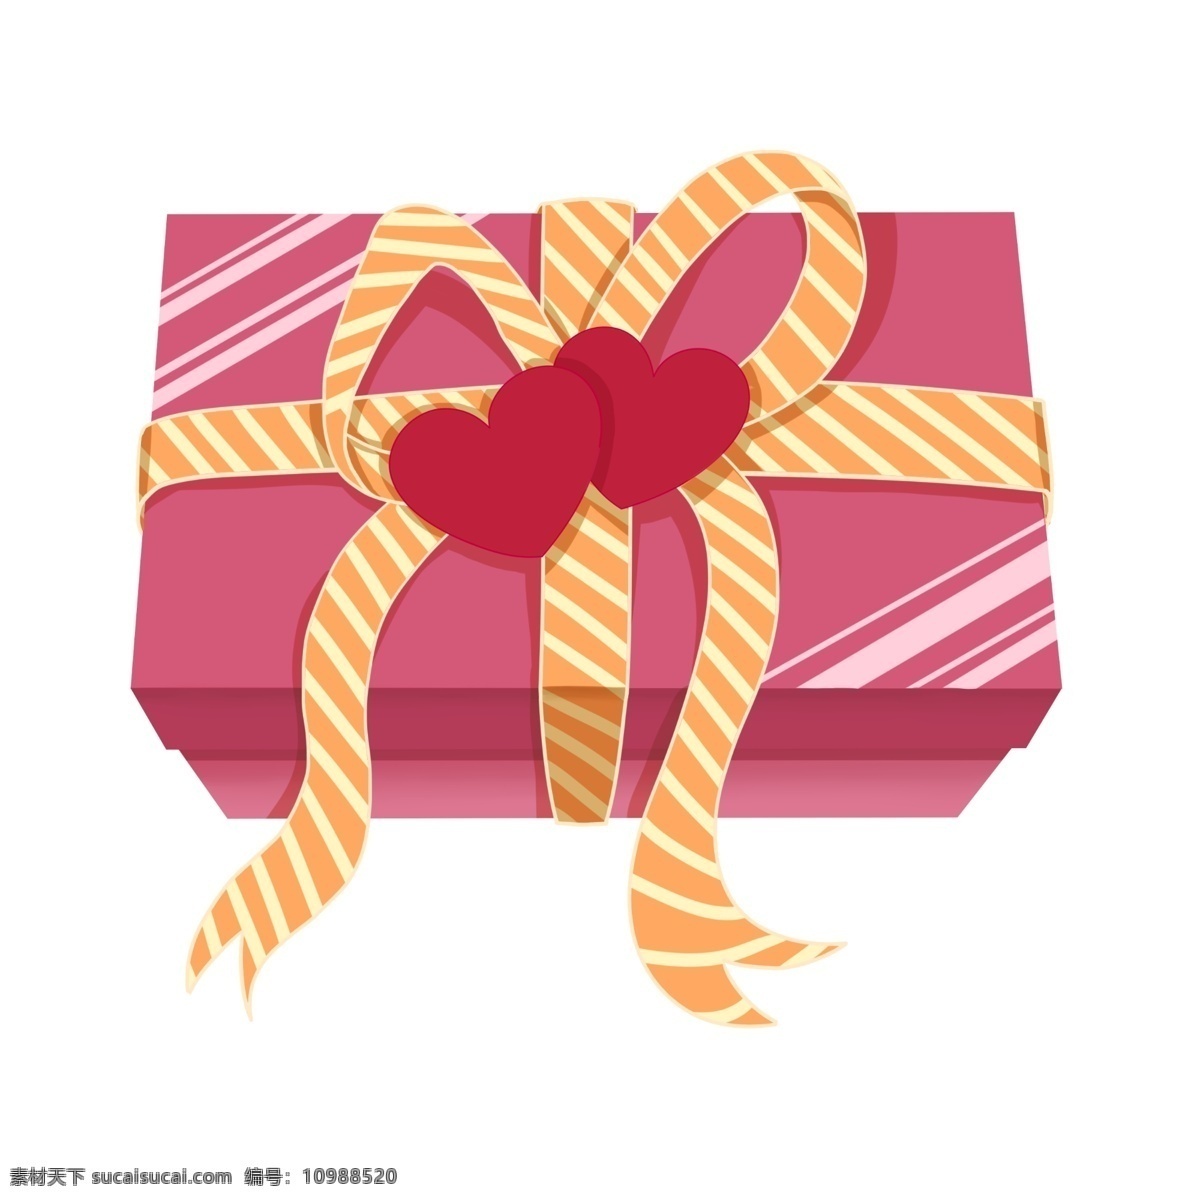 手绘 情人节 礼盒 插画 情人节礼物 卡通插画 黄色的蝴蝶结 粉色的礼盒 红色的双心